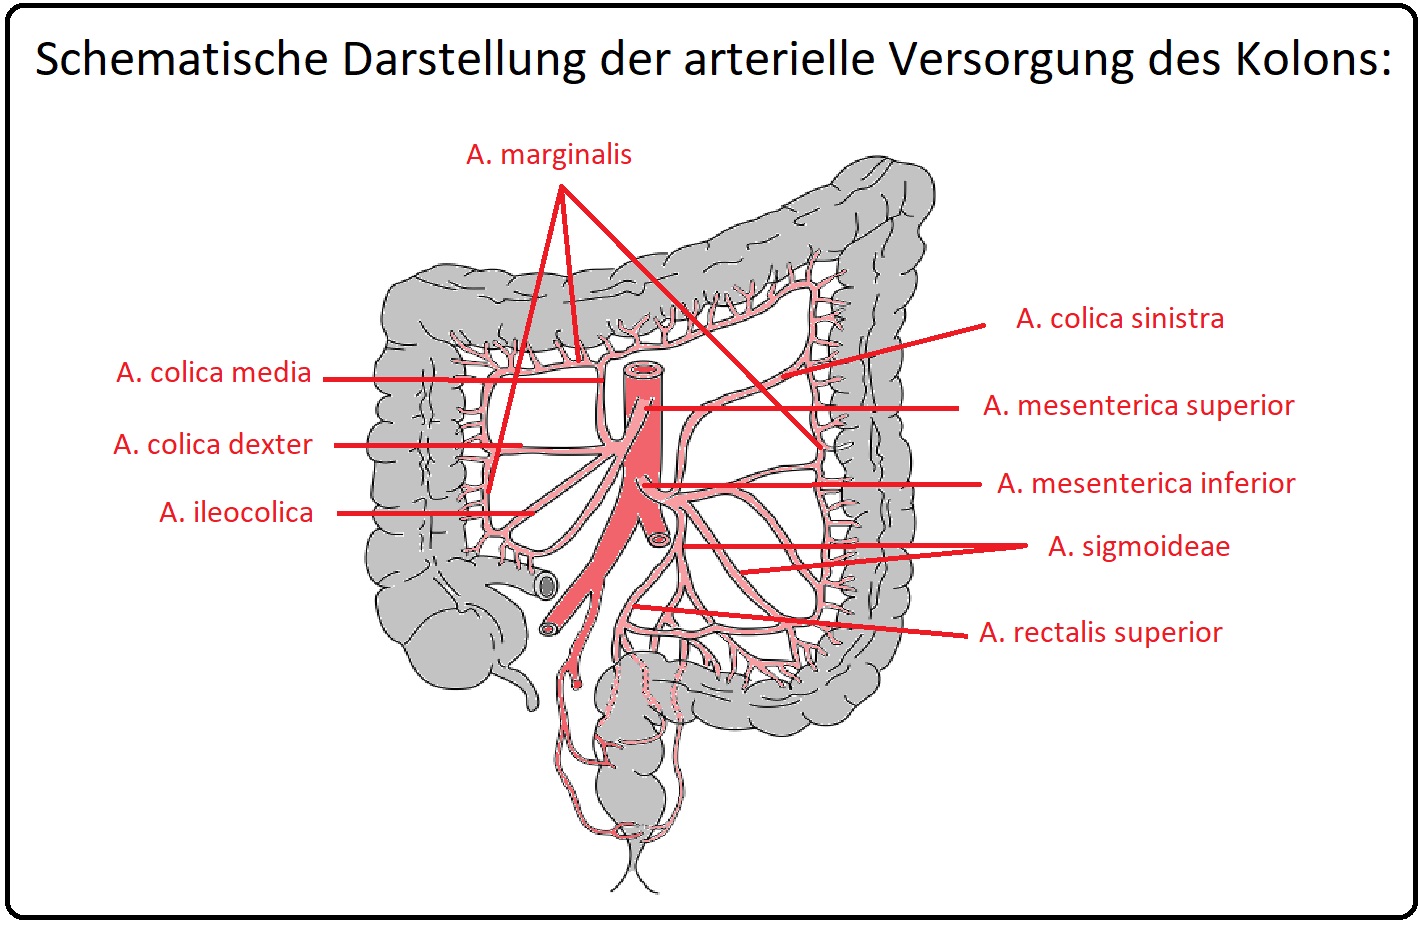 821 Schematische Darstellung der arteriellen Versorgung des Kolons